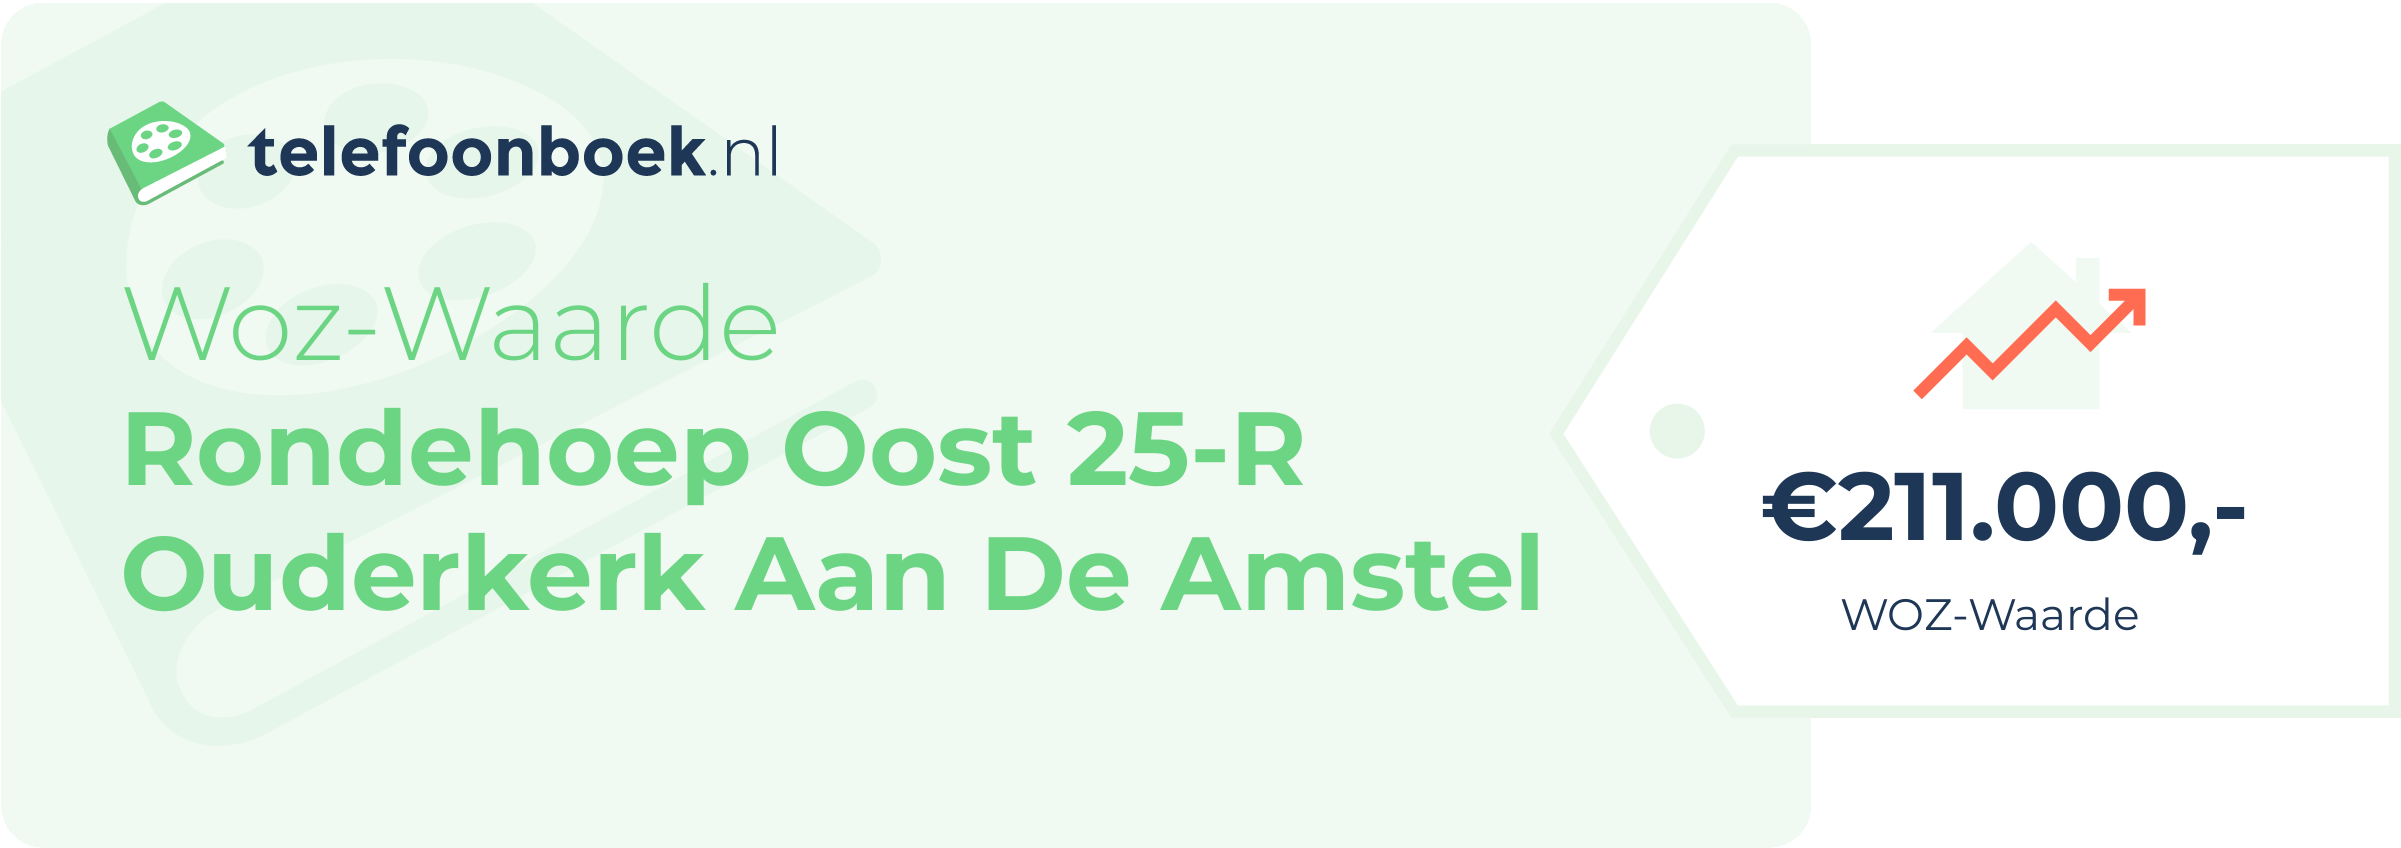 WOZ-waarde Rondehoep Oost 25-R Ouderkerk Aan De Amstel